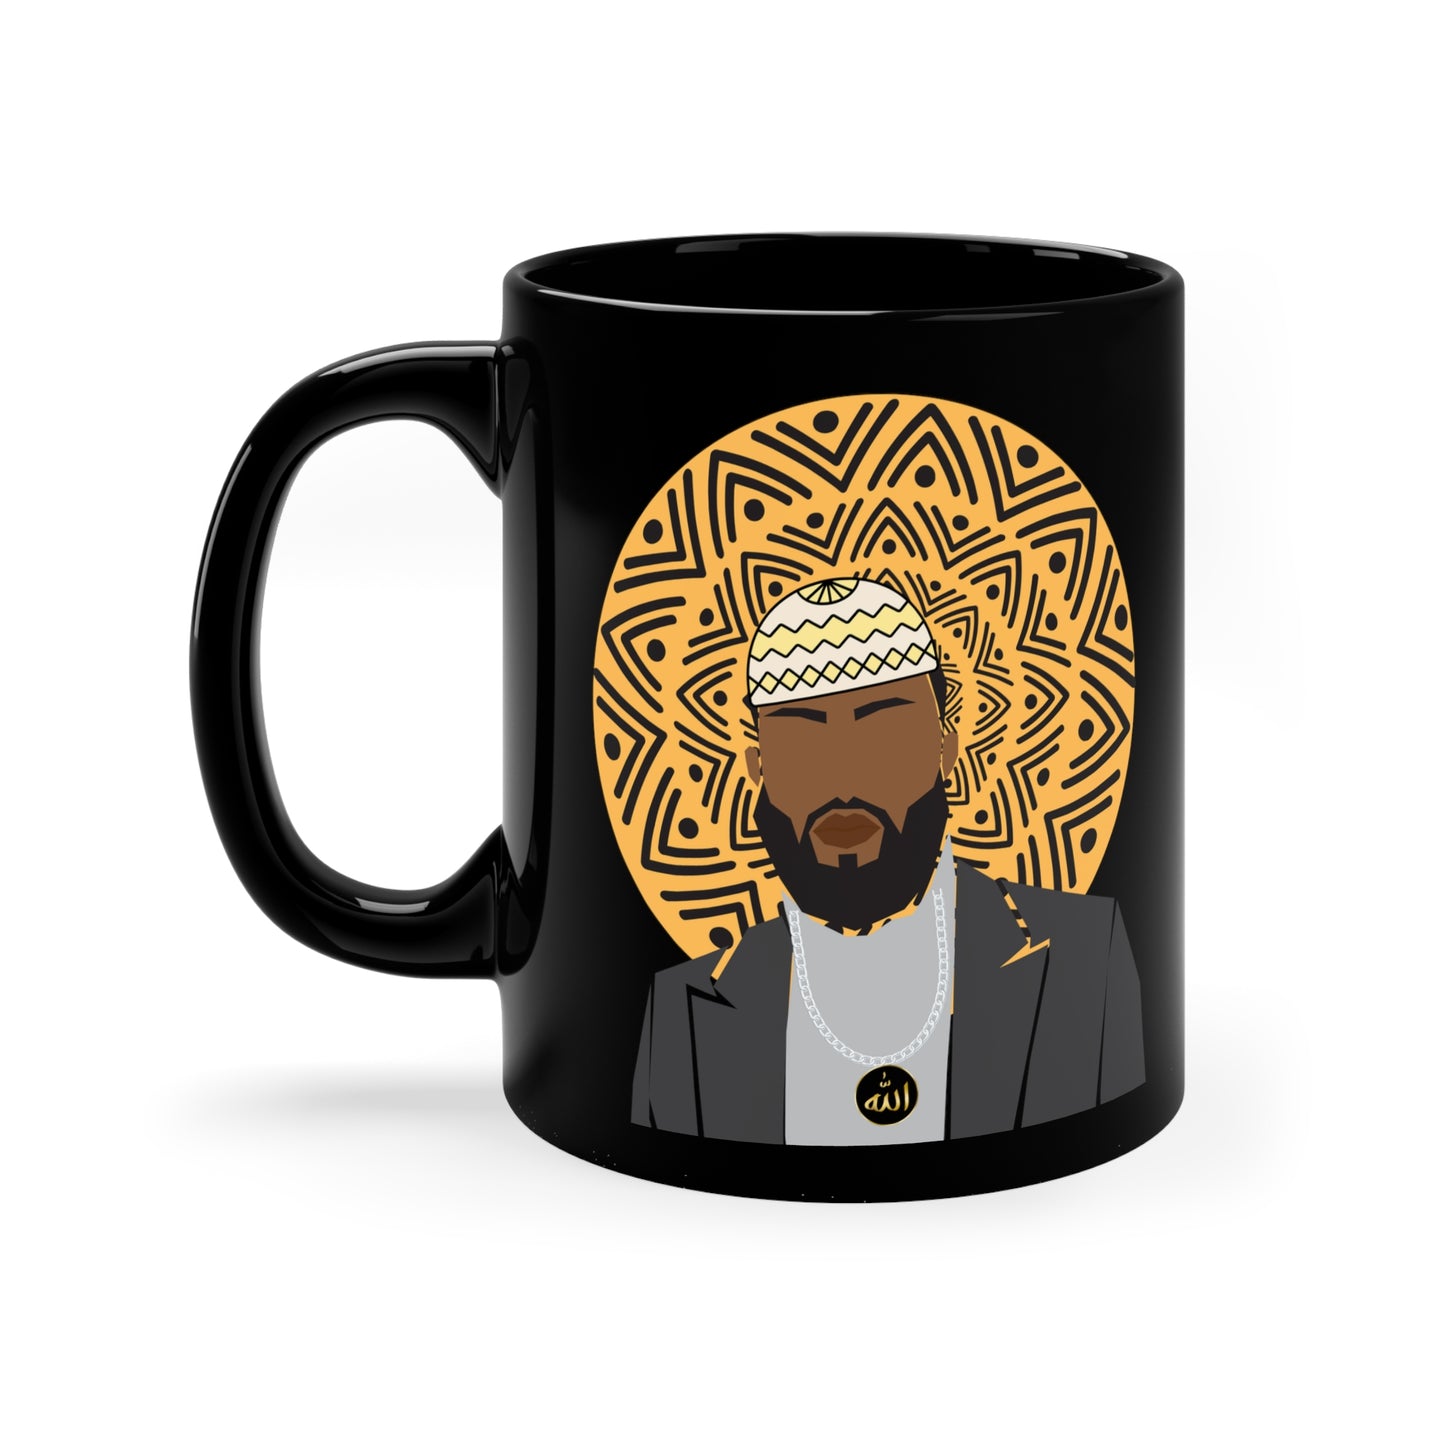 Abu Black Coffee Mug, 11oz